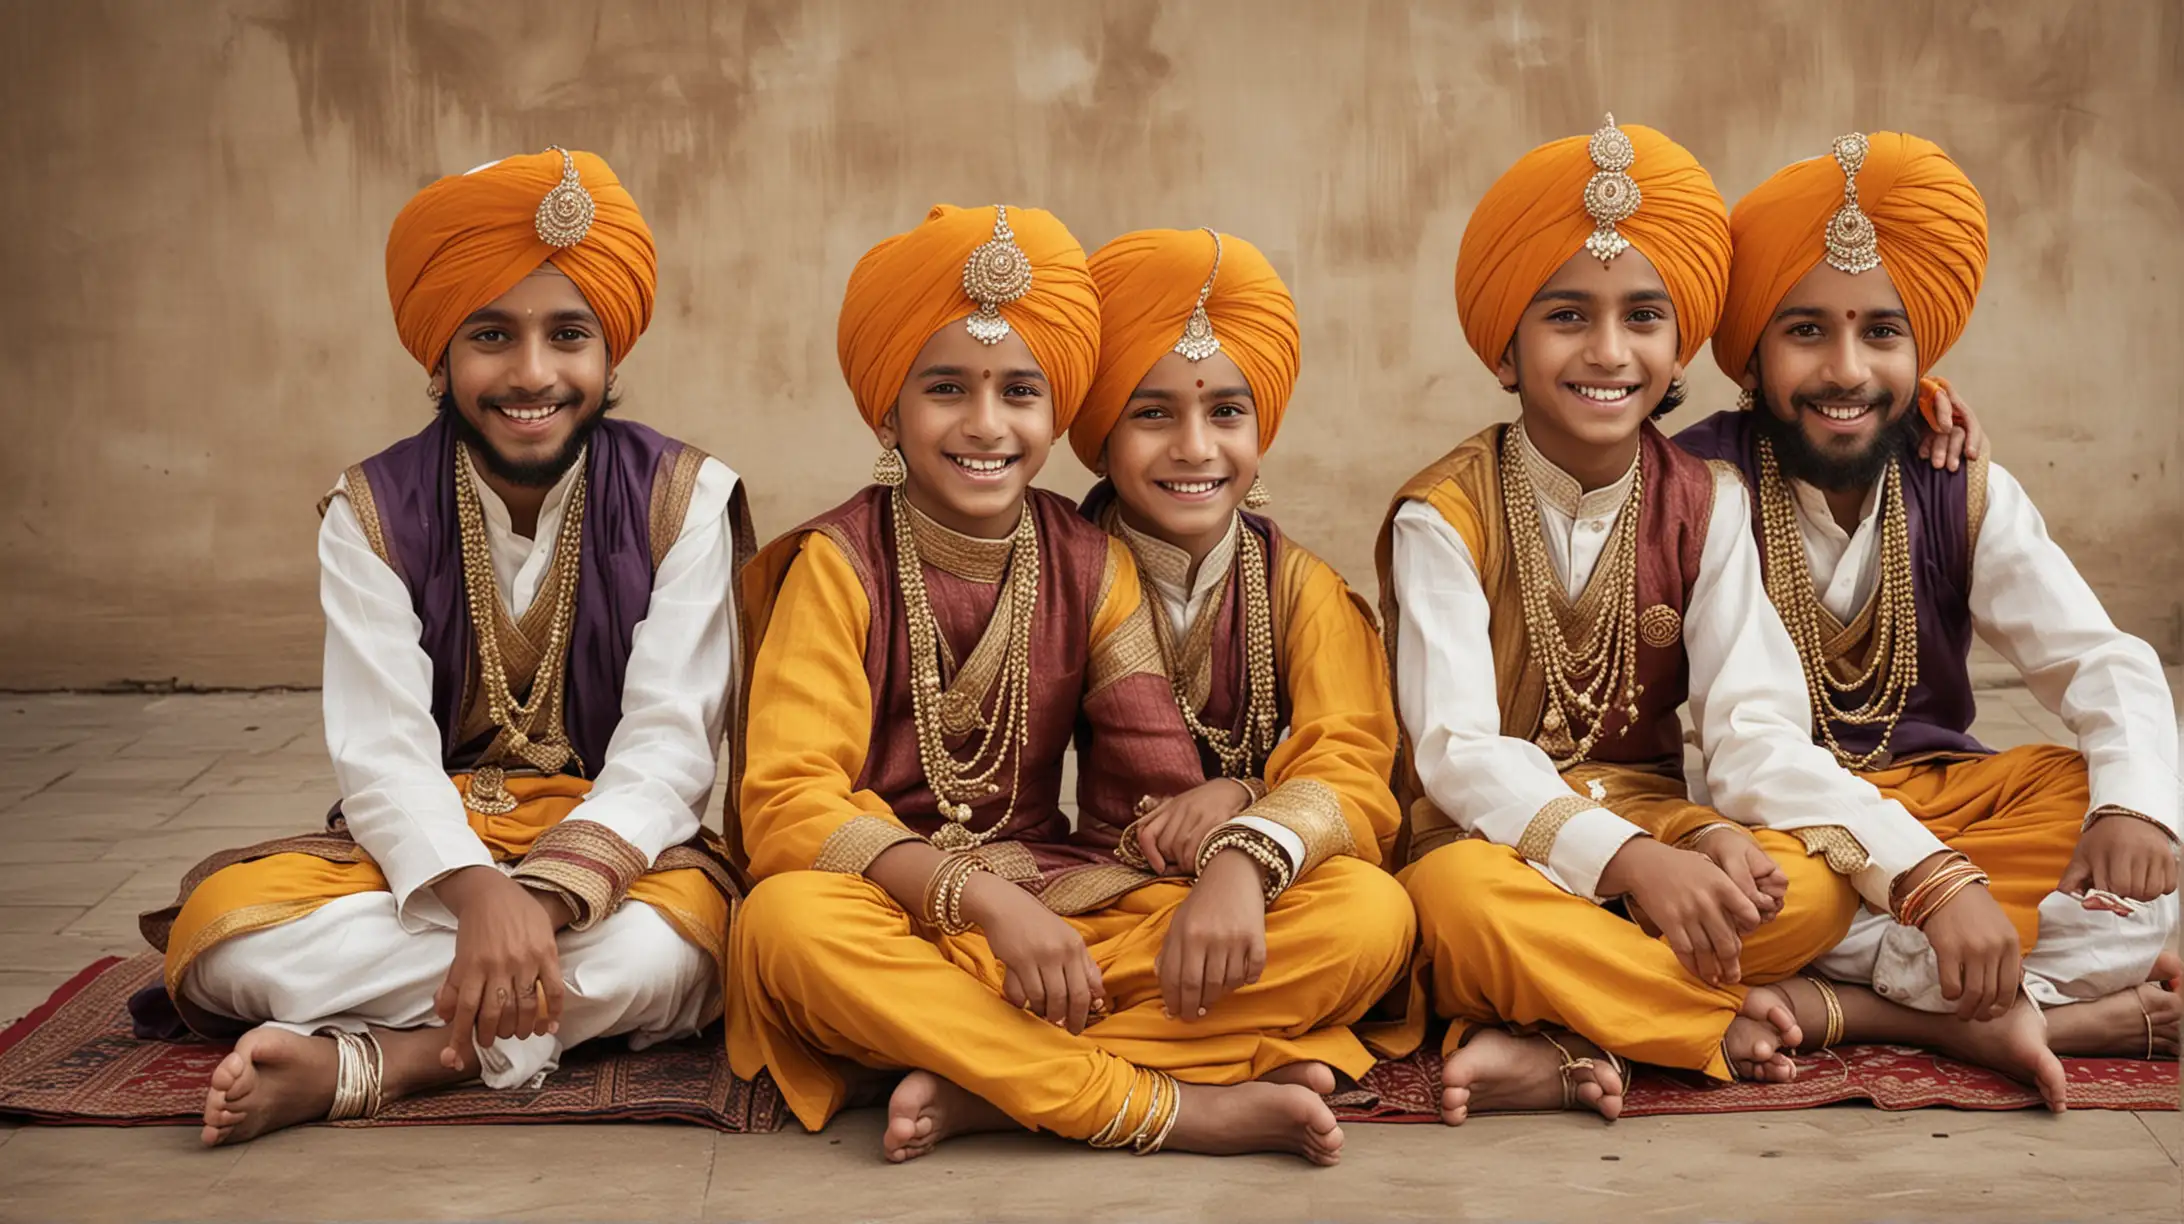 Four Joyful Sikh Boys in Regal Attire India 300 Years Ago